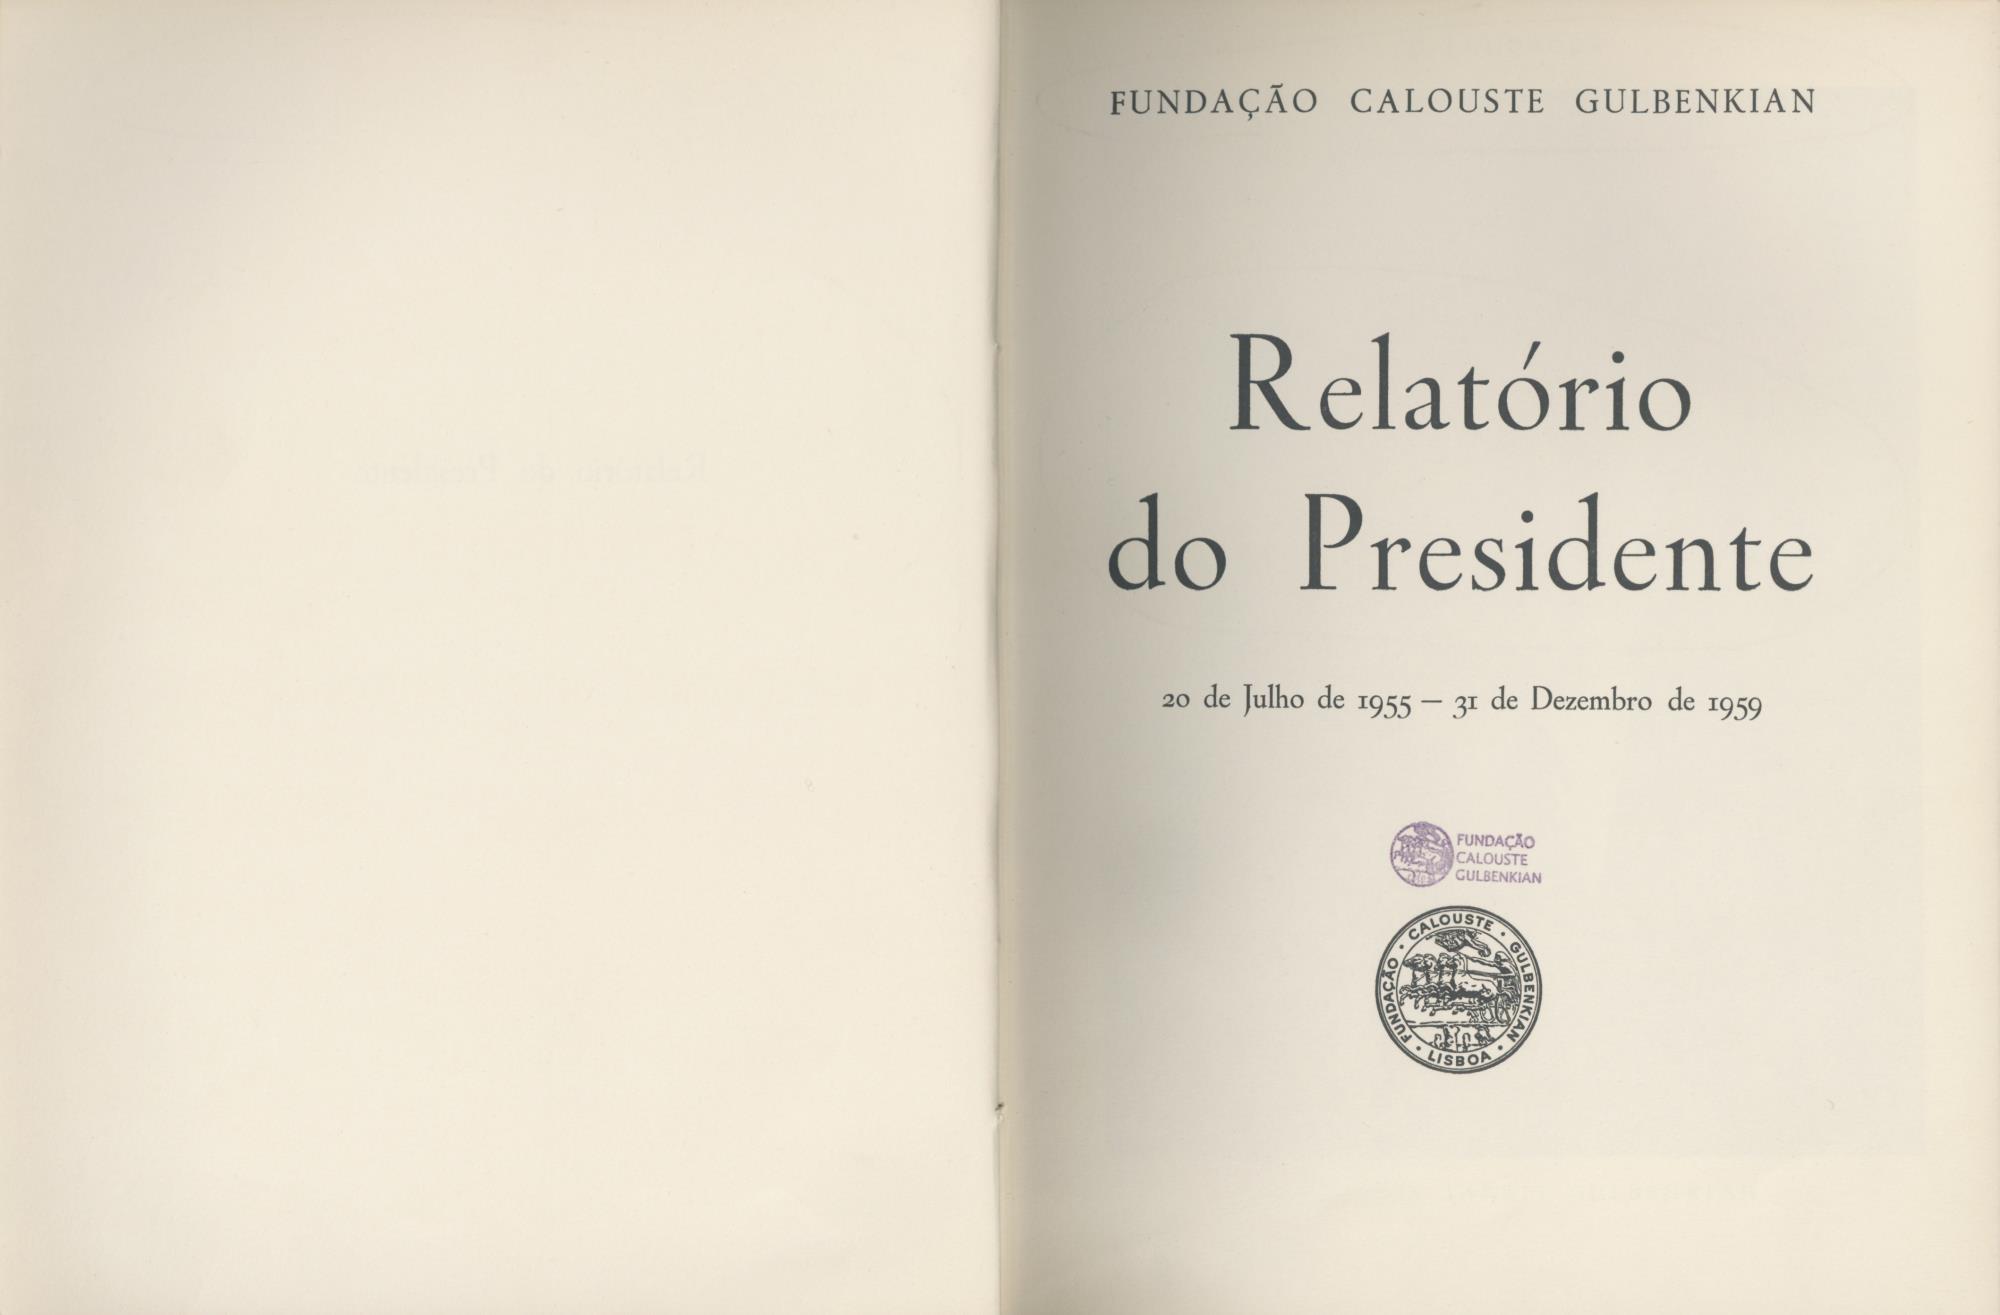 1961_Relatorio_do_Presidente_vol1_Catalogo_folha_de_rosto_PCCS21